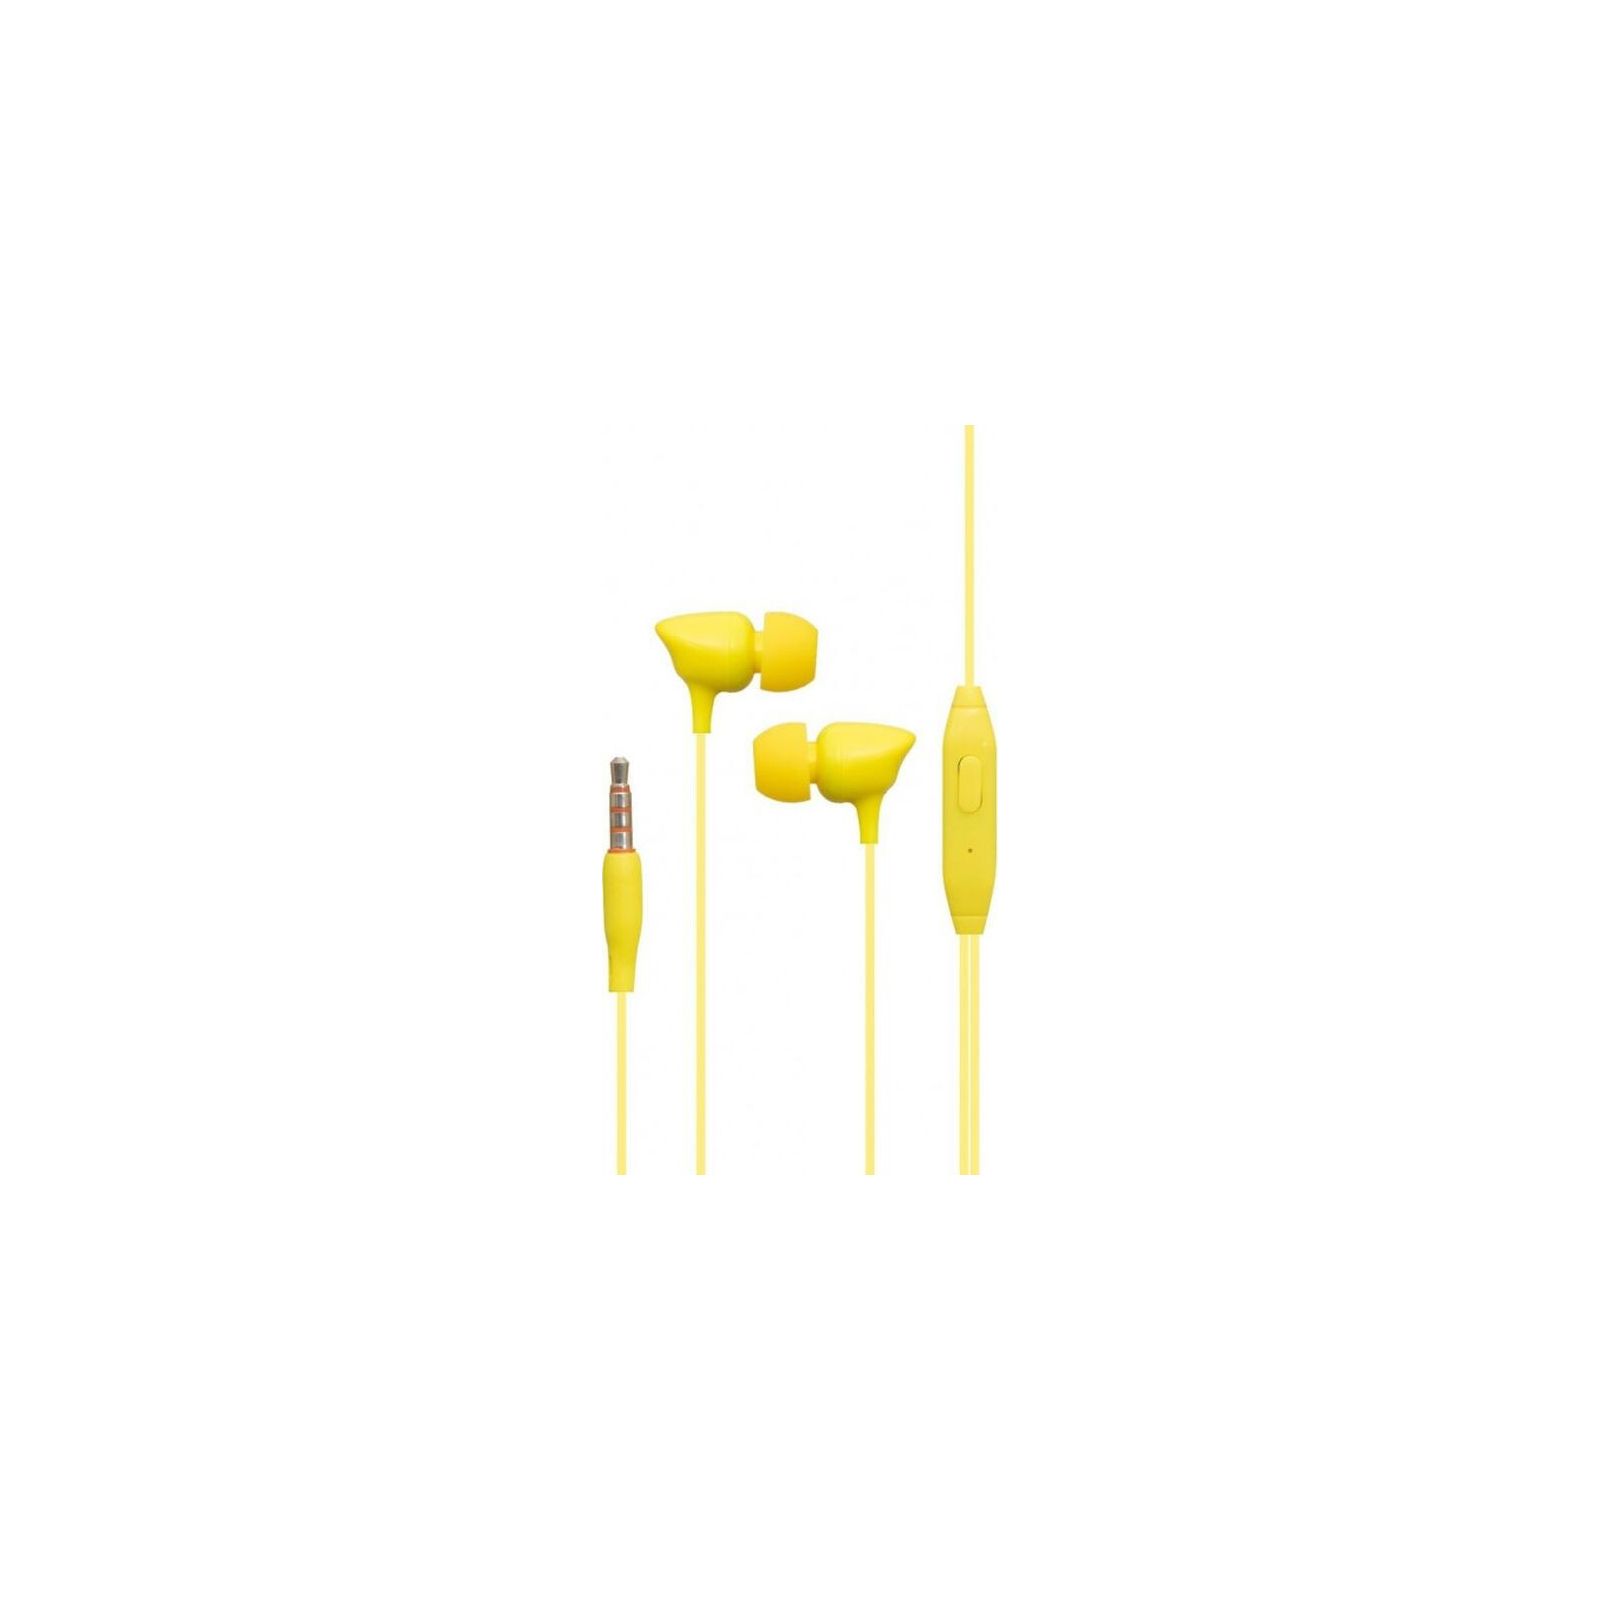 Навушники Celebrat G7 Yellow (714455)